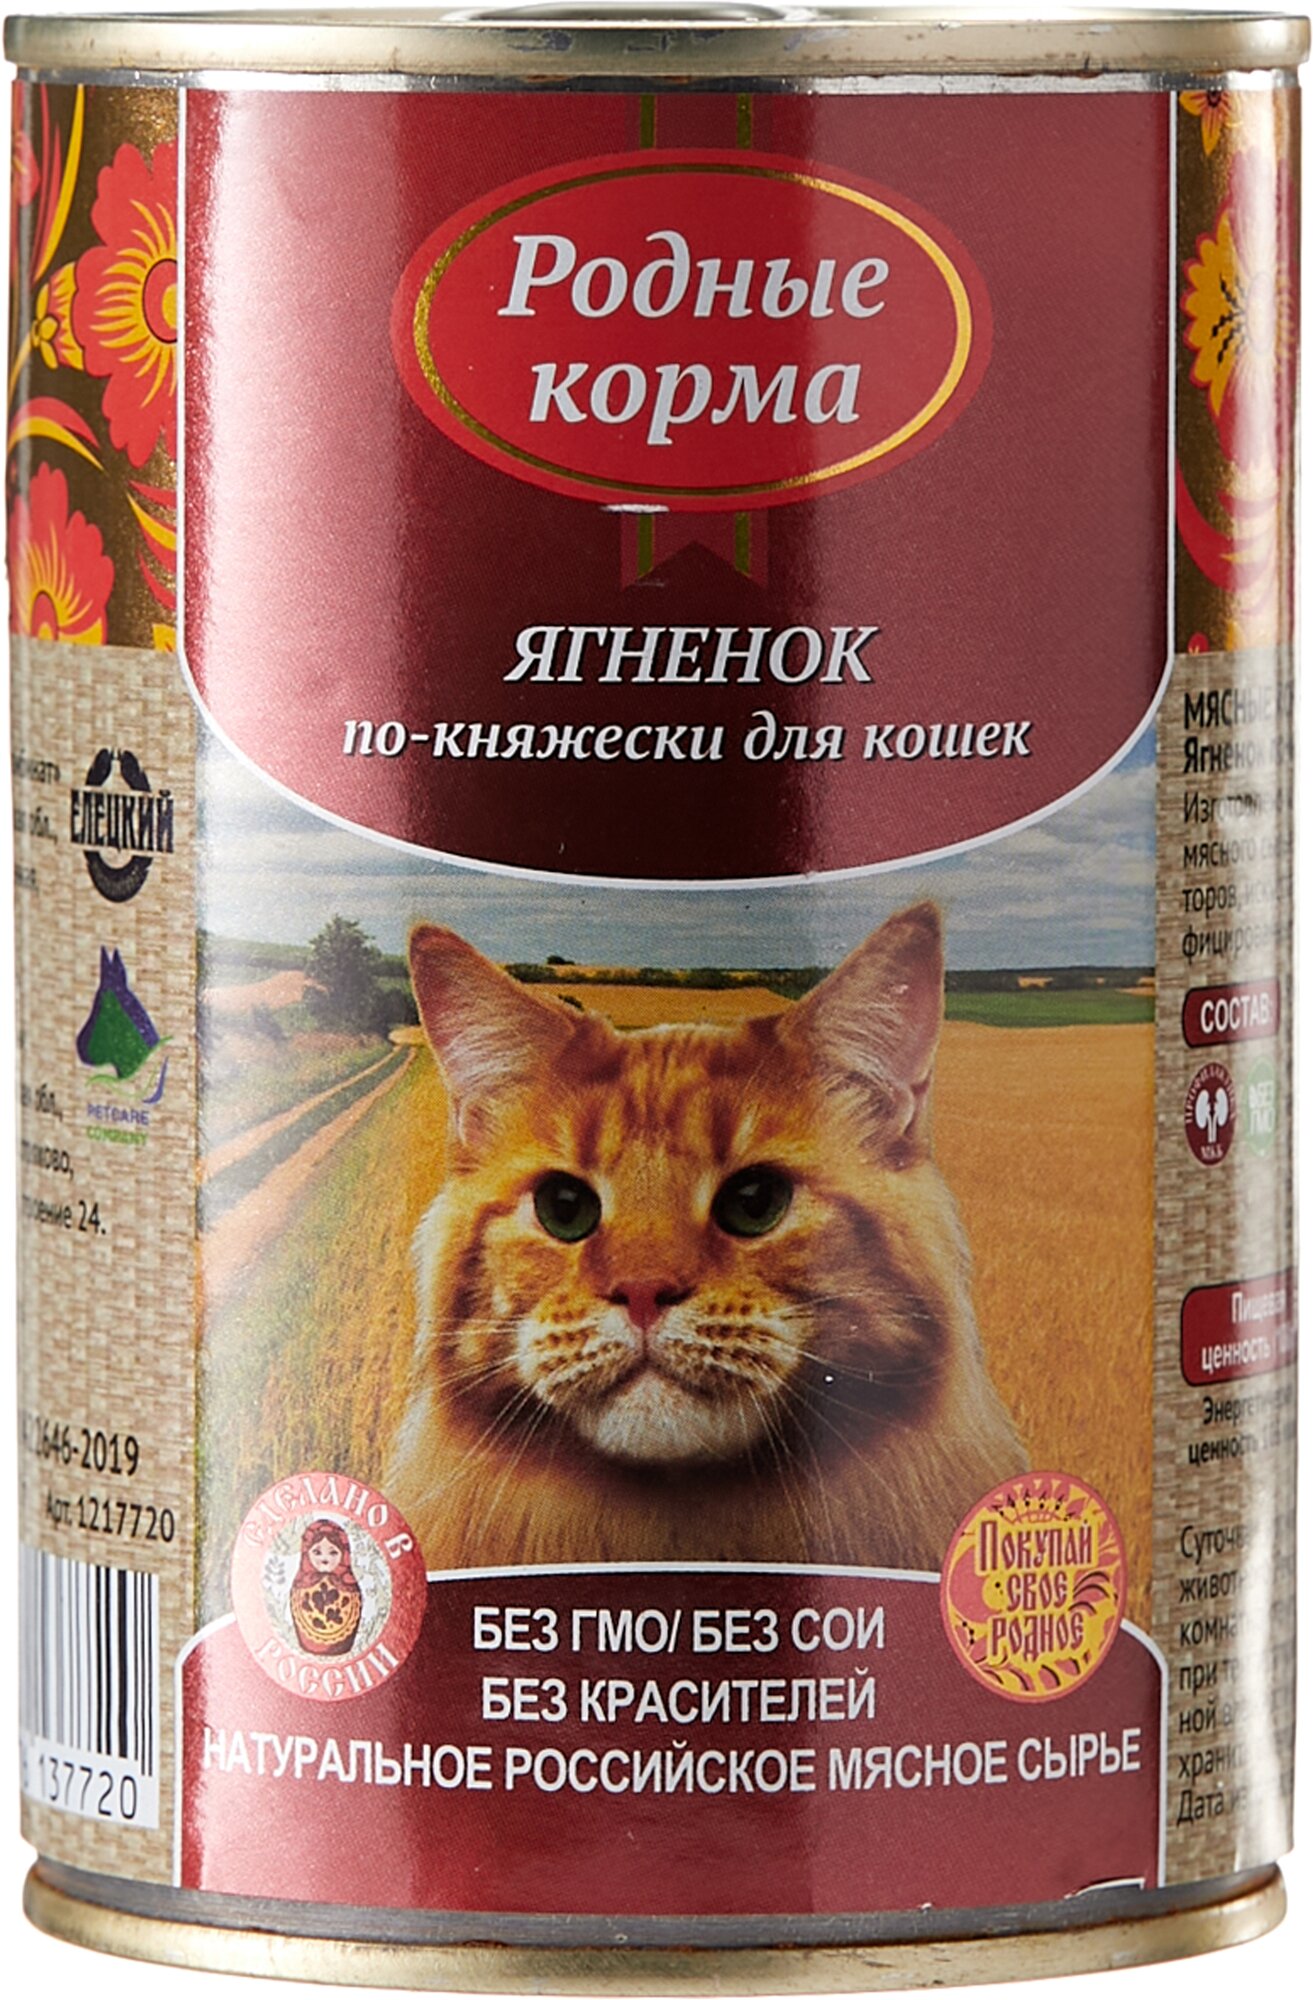 Влажный корм родные корма консервы для кошек Ягненок по-княжески 410 гр